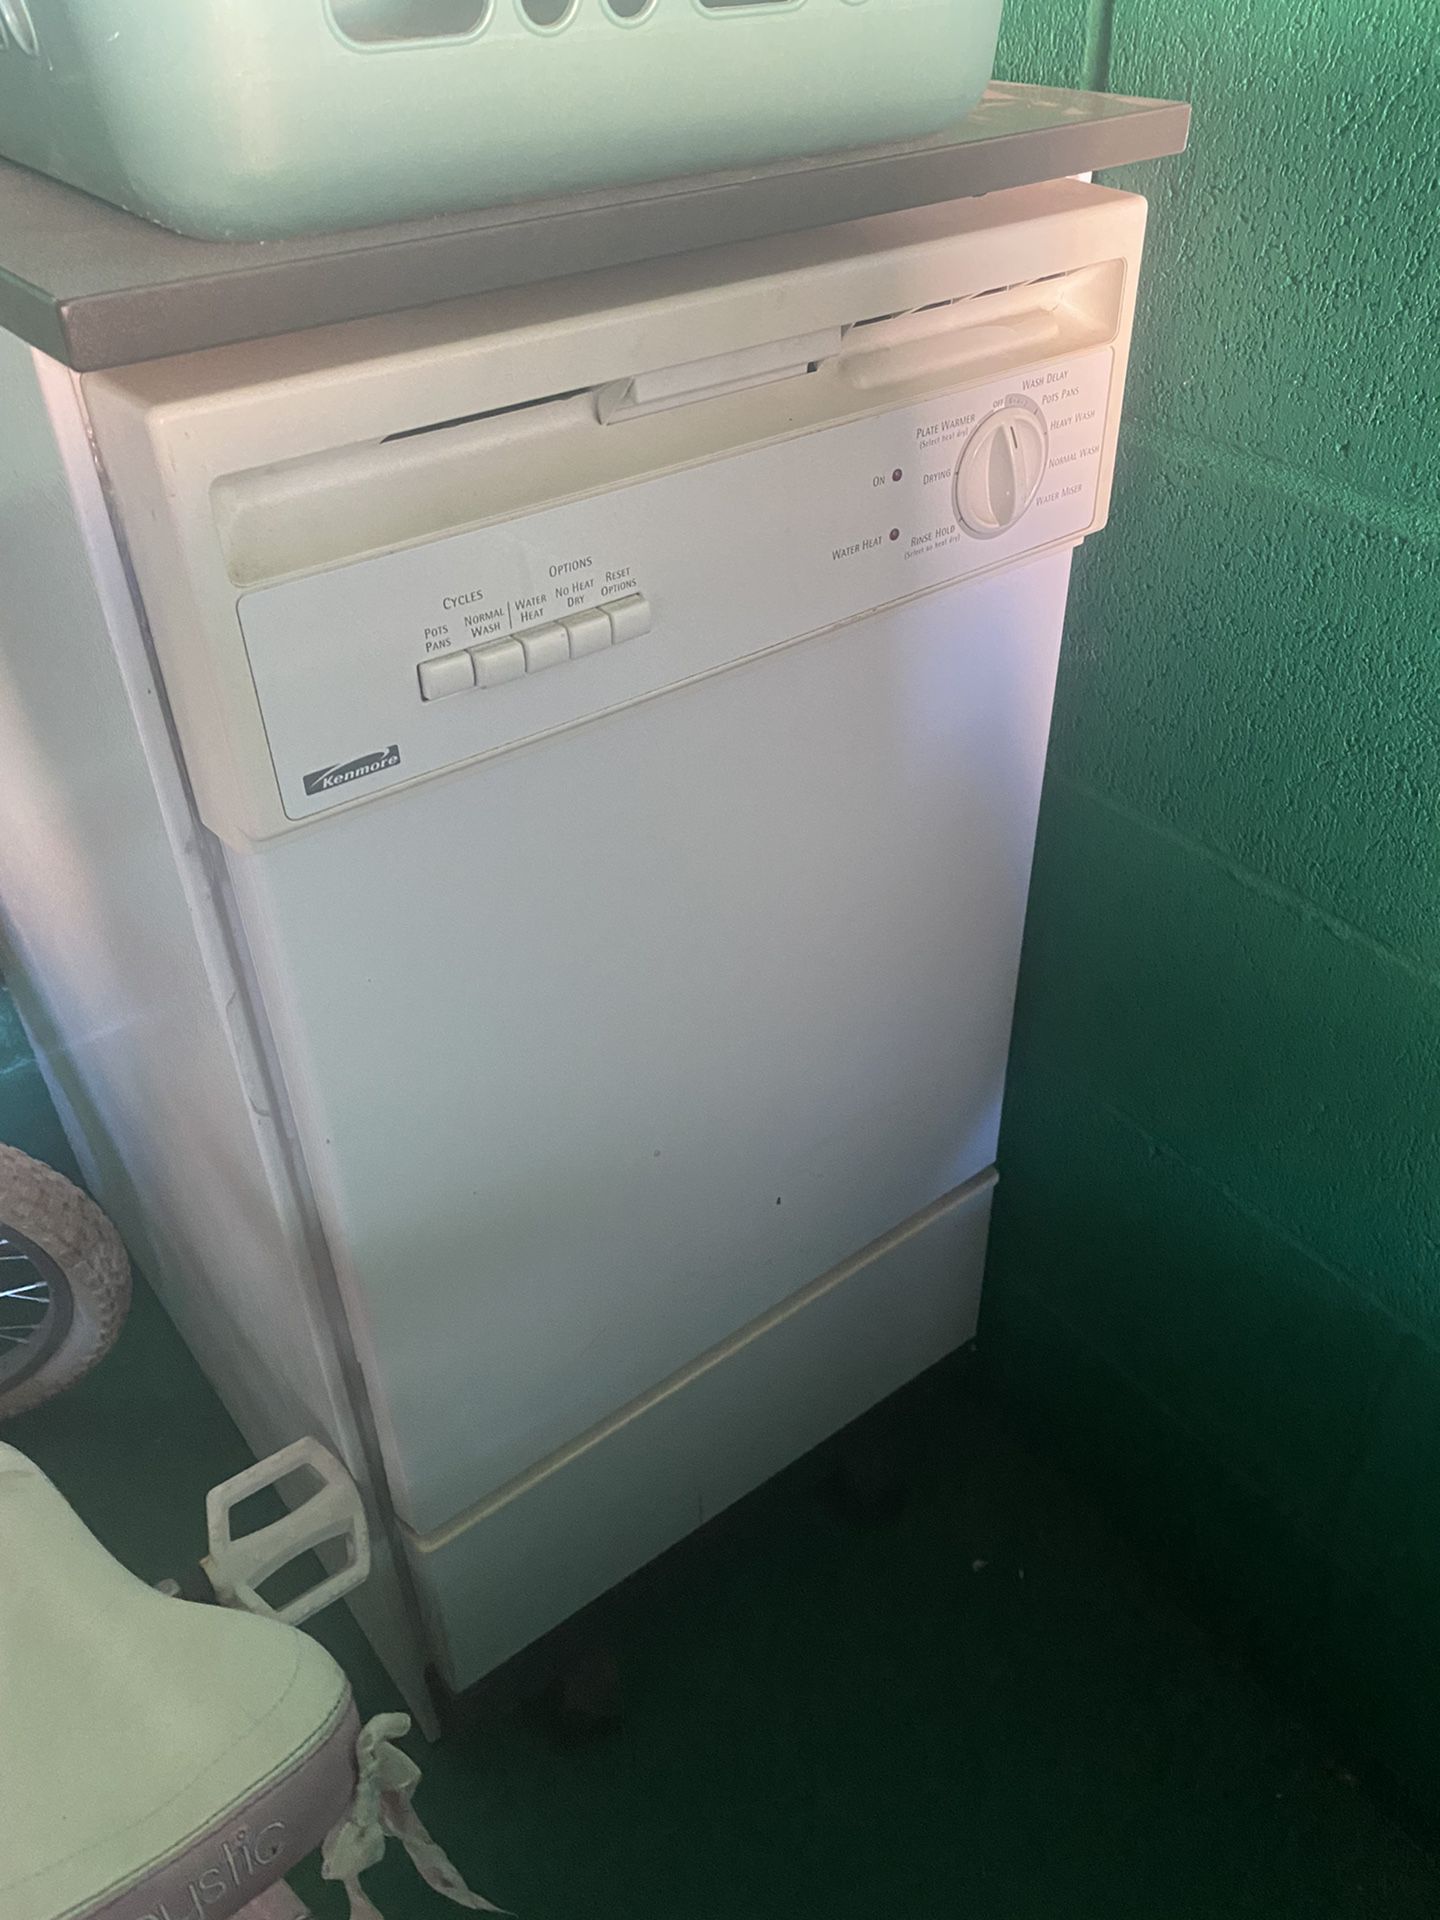 Kenmore Portable Dishwasher - appliances - by dealer - sale - craigslist